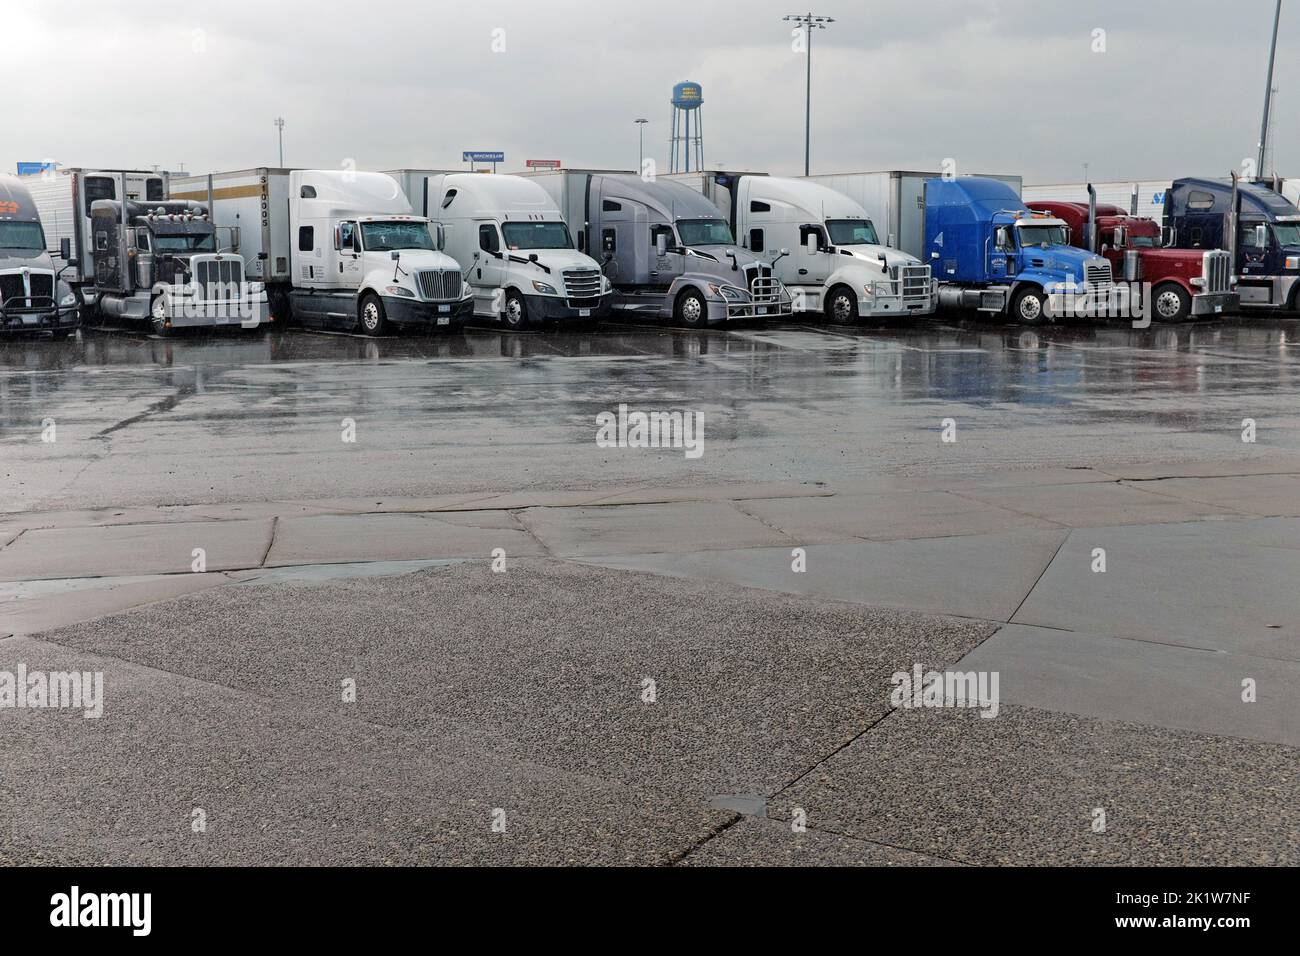 Une rangée de semi-camions garés pendant une tempête de pluie au plus grand arrêt de camion du monde, Iowa 80, à Walcott, Iowa, États-Unis. Banque D'Images